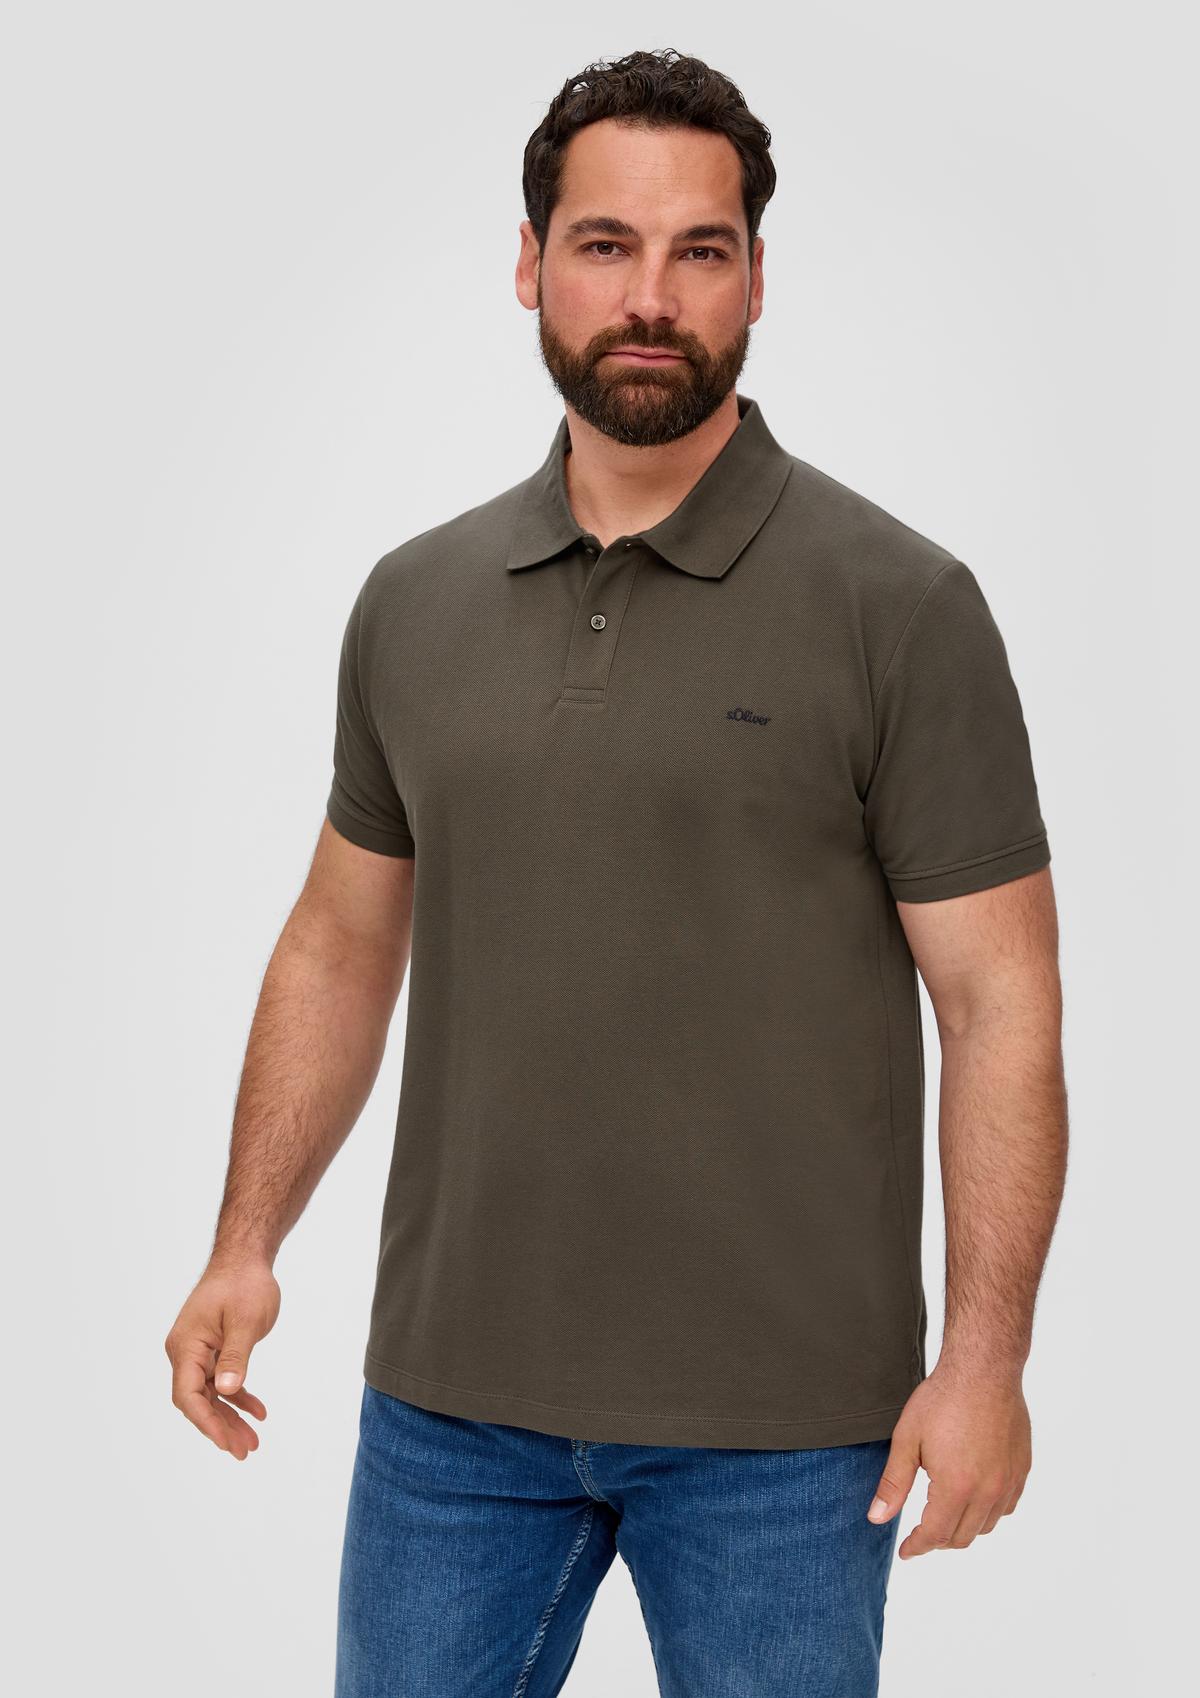 Polo shirt with a piqué texture